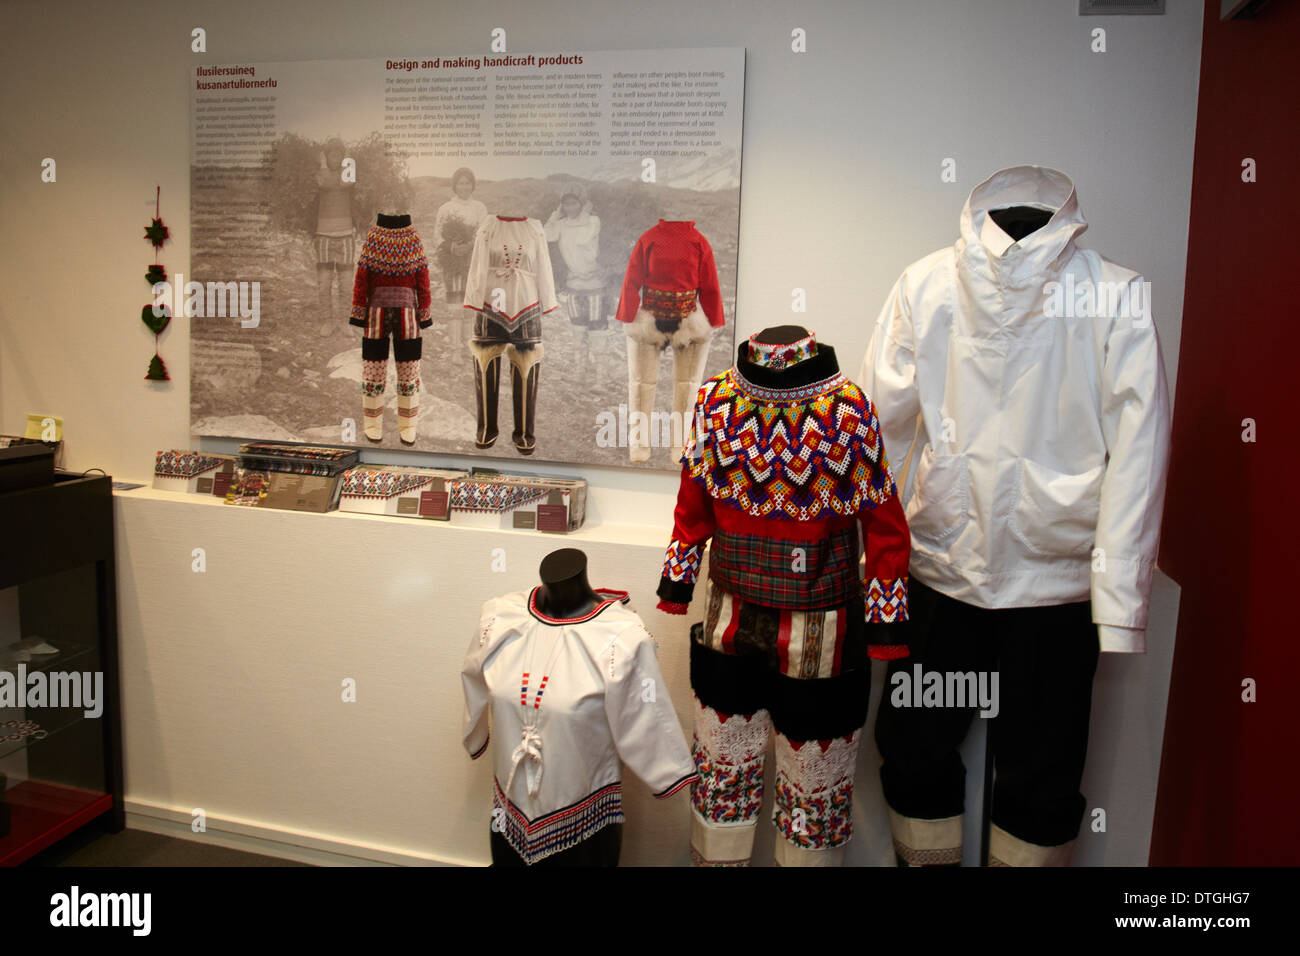 Un stand avec des vêtements groenlandaise dans un atelier de bricolage à Nuuk. Groenland Banque D'Images